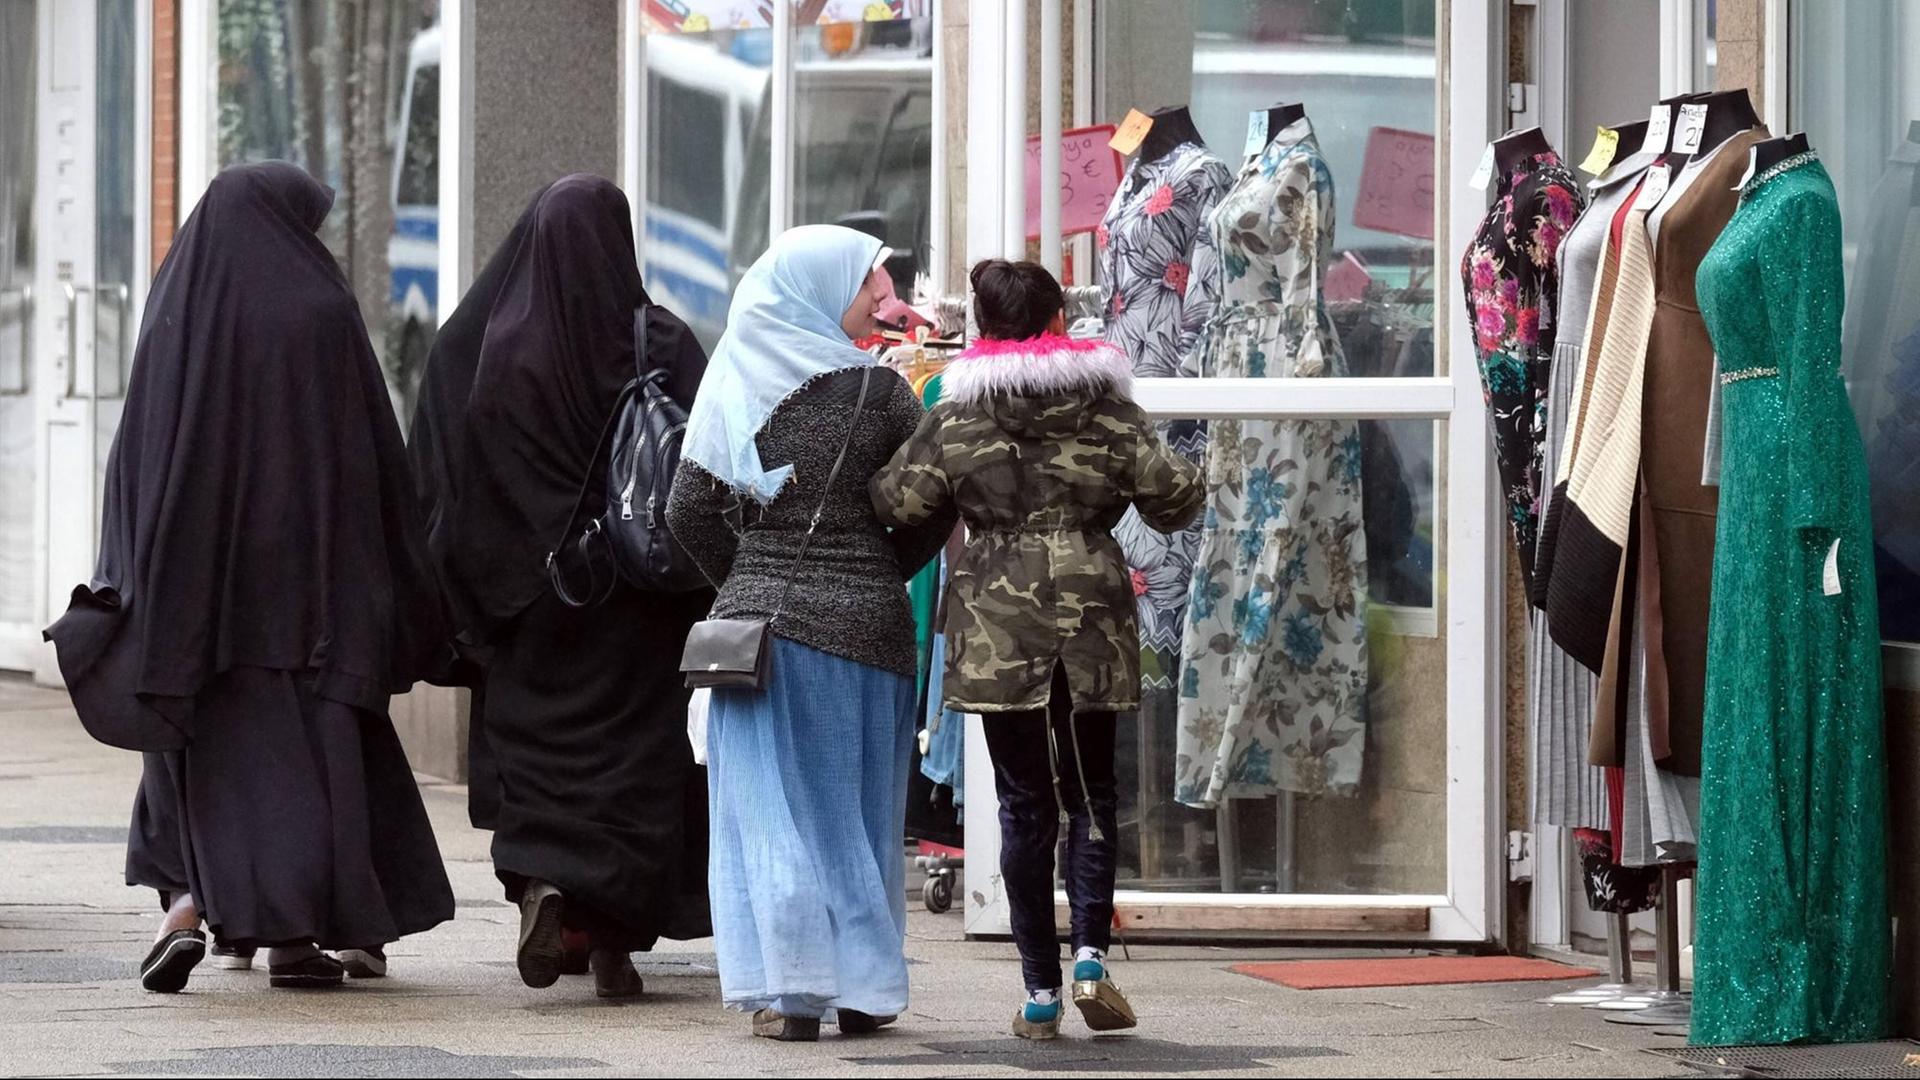 Zwei komplett in schwarz verhüllte ältere Frauen und zwei farbenfroher gekleidete jüngere Mädchen, davon eins mit mit buntem Kopftuch, passieren ein muslimisches Bekleidungsgeschaeft mit Schaufensterpuppen in Duisburg-Marxloh.